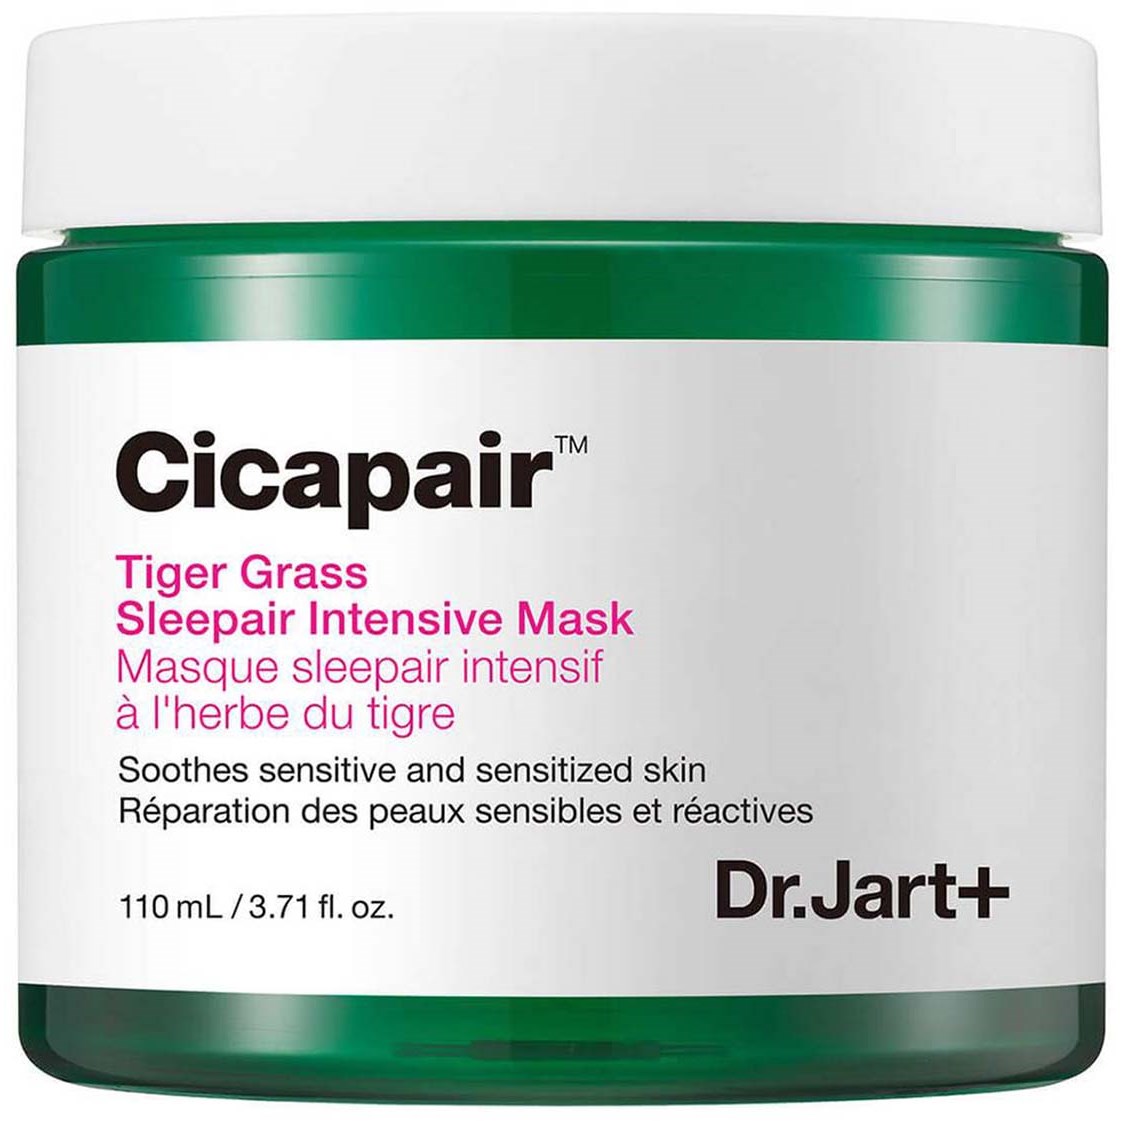 Dr.Jart+ Cicapair Tiger Grass Sleepair Intensive Mask 110 ml